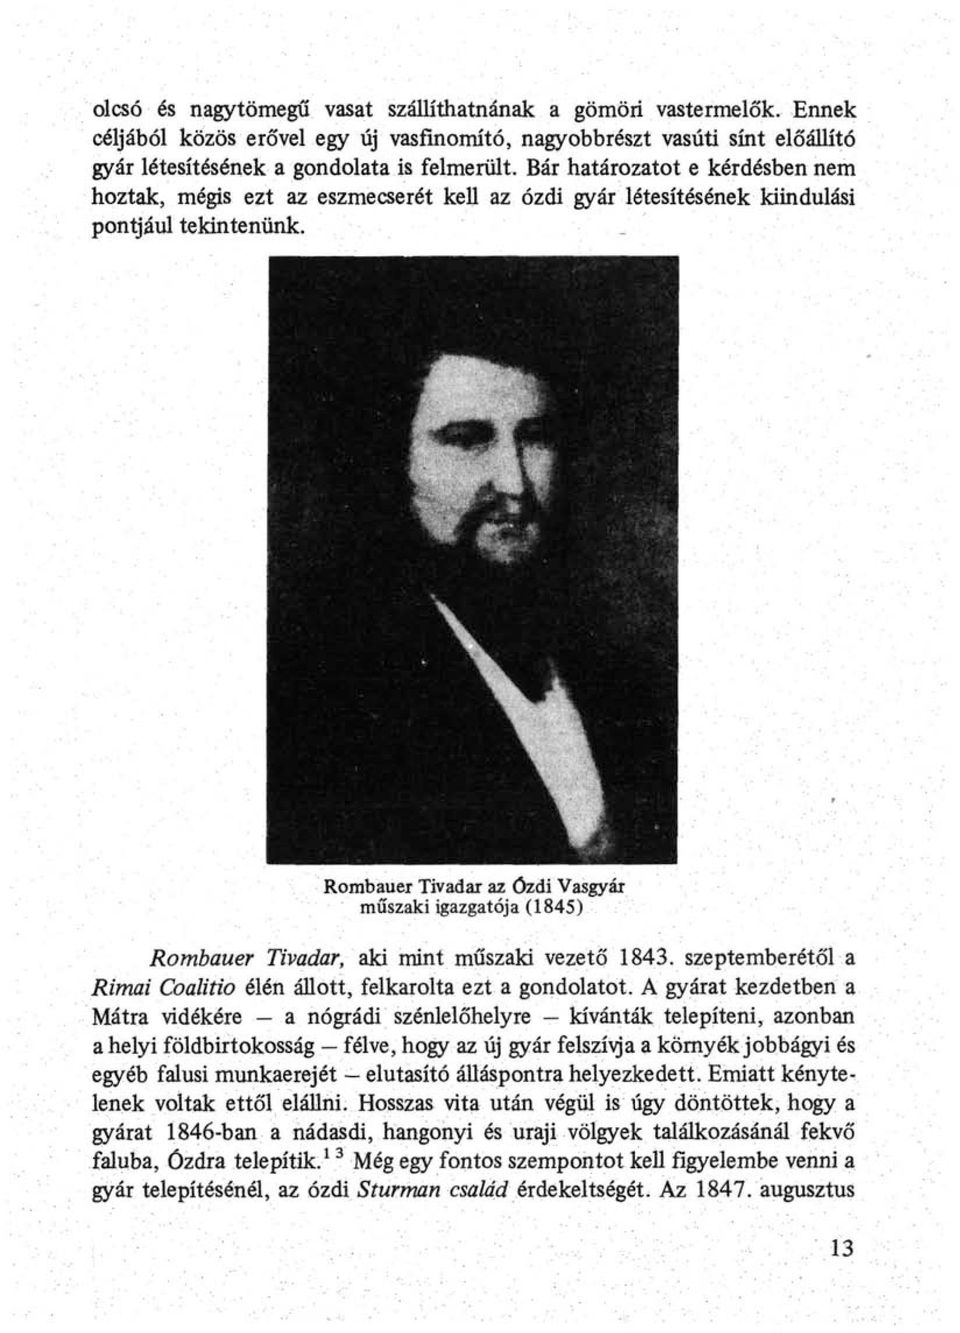 Rombauer Tivadar az ózdi Vasgyár műszaki igazgatój a (1845) Rombauer Tivadar, aki mint műszaki vezető 1843. szeptemberétől a Rimai Coalitio élén állott, felkarolta ezt a gondolatot.